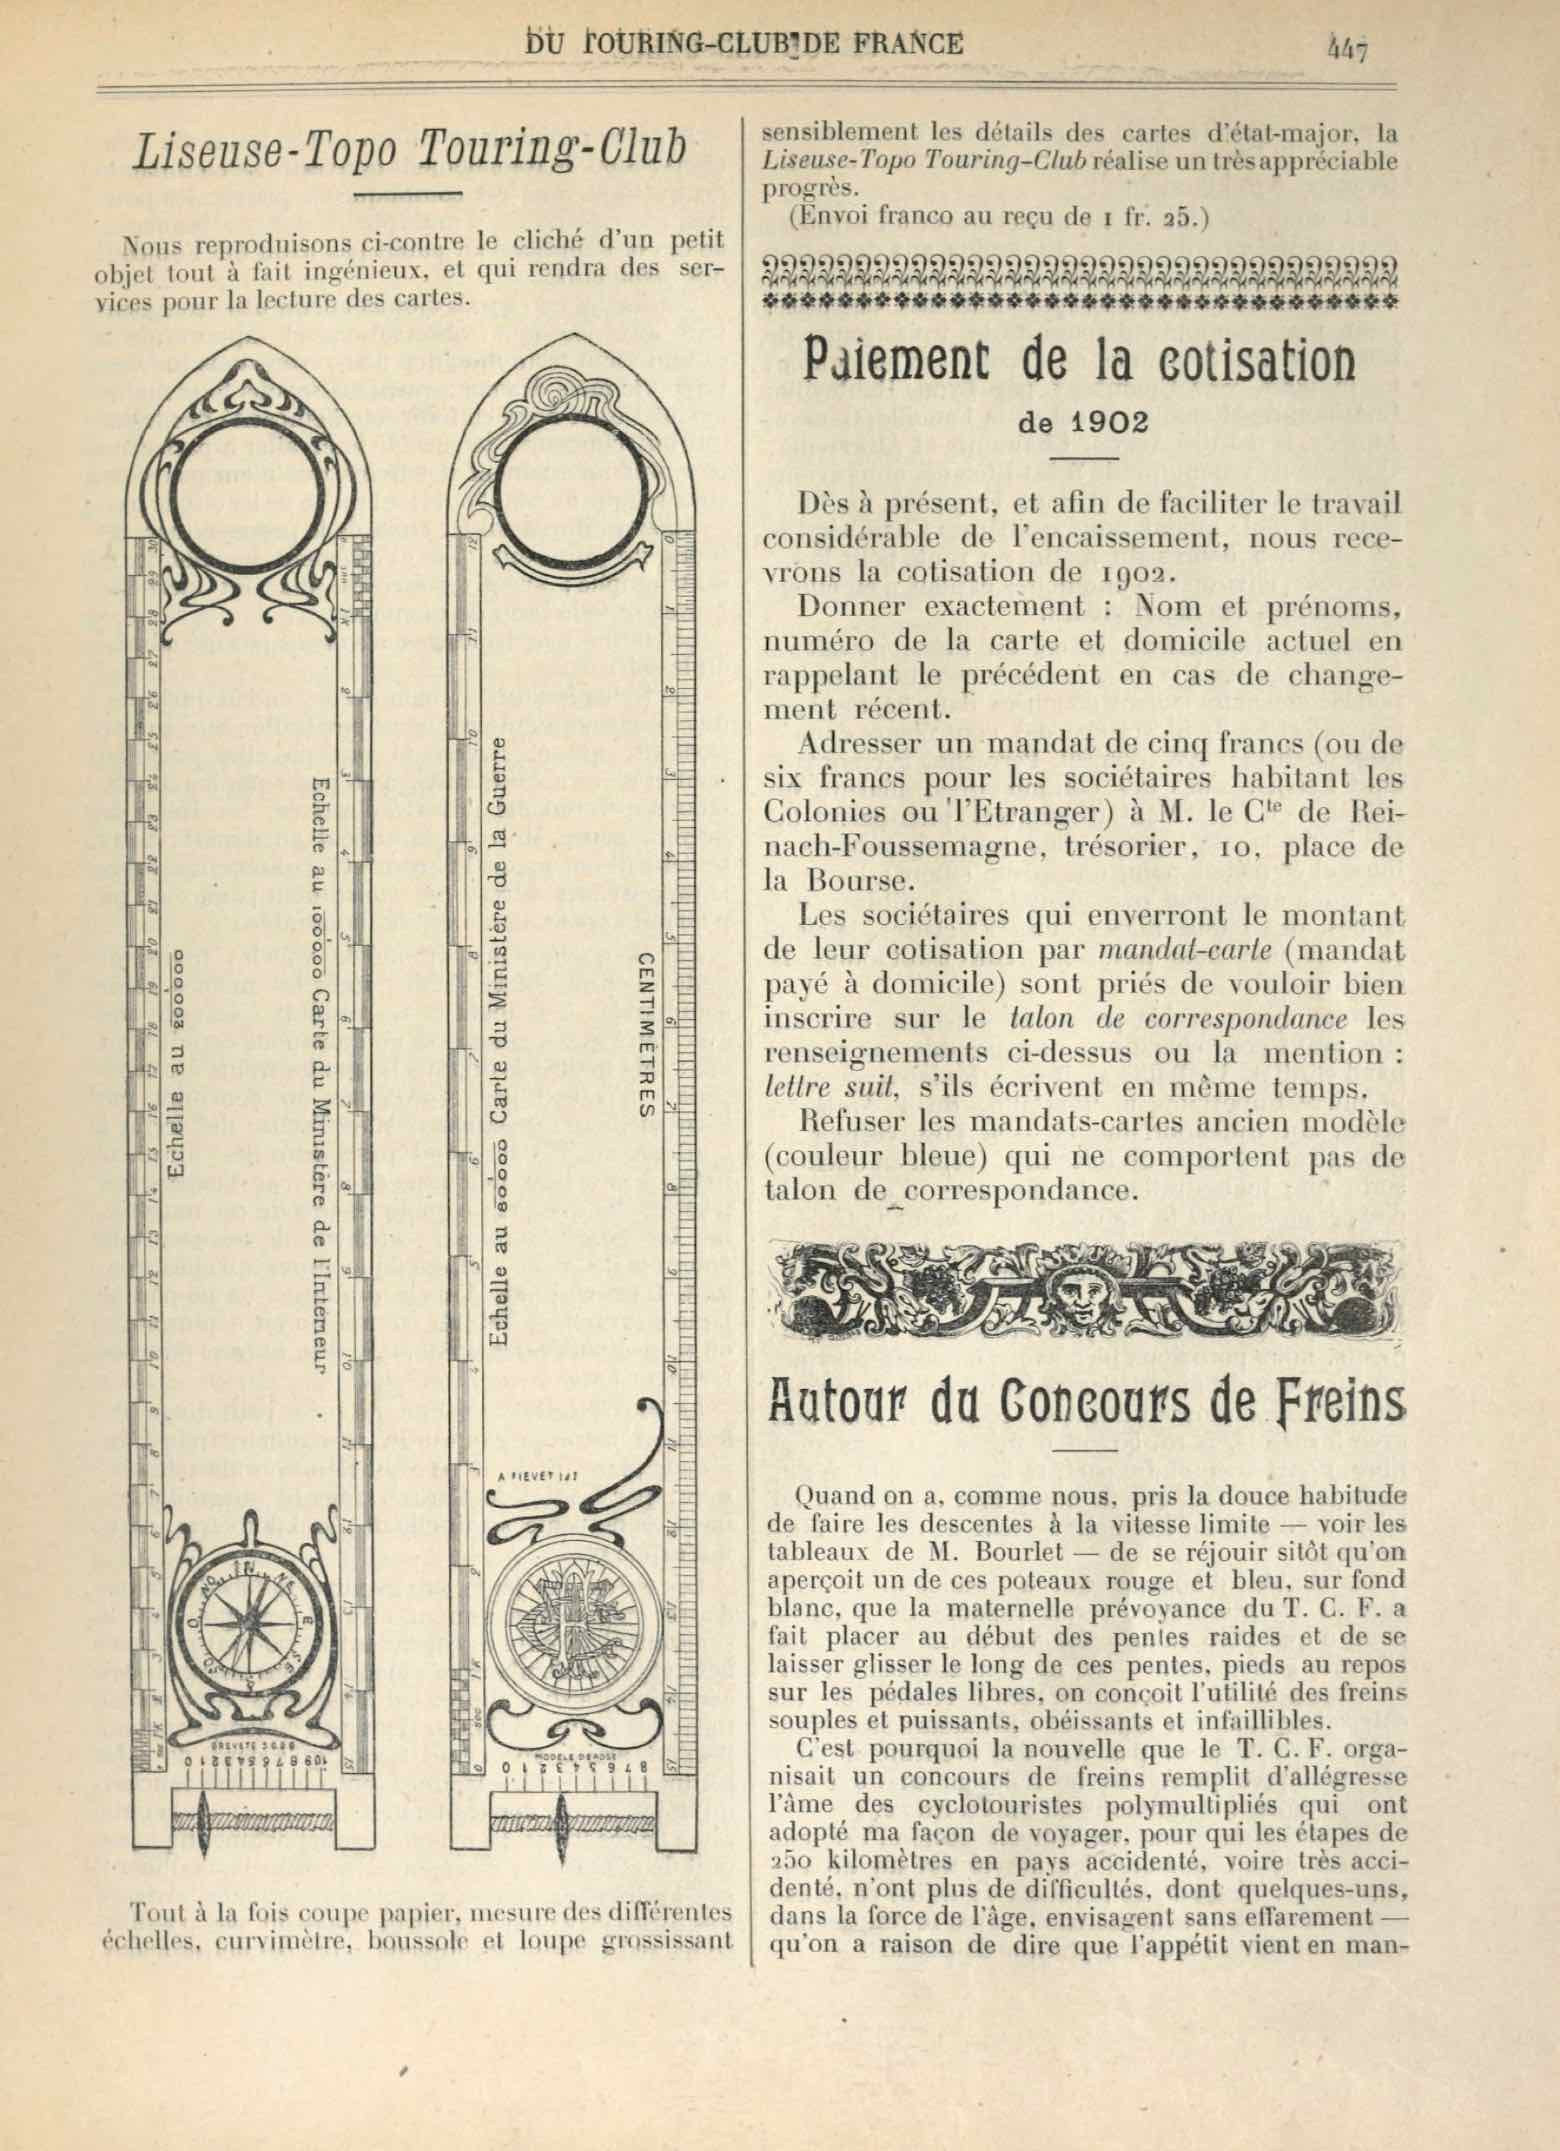 T.C.F. Revue Mensuelle October 1901 - Autour du Concours de Freins scan 1 main image